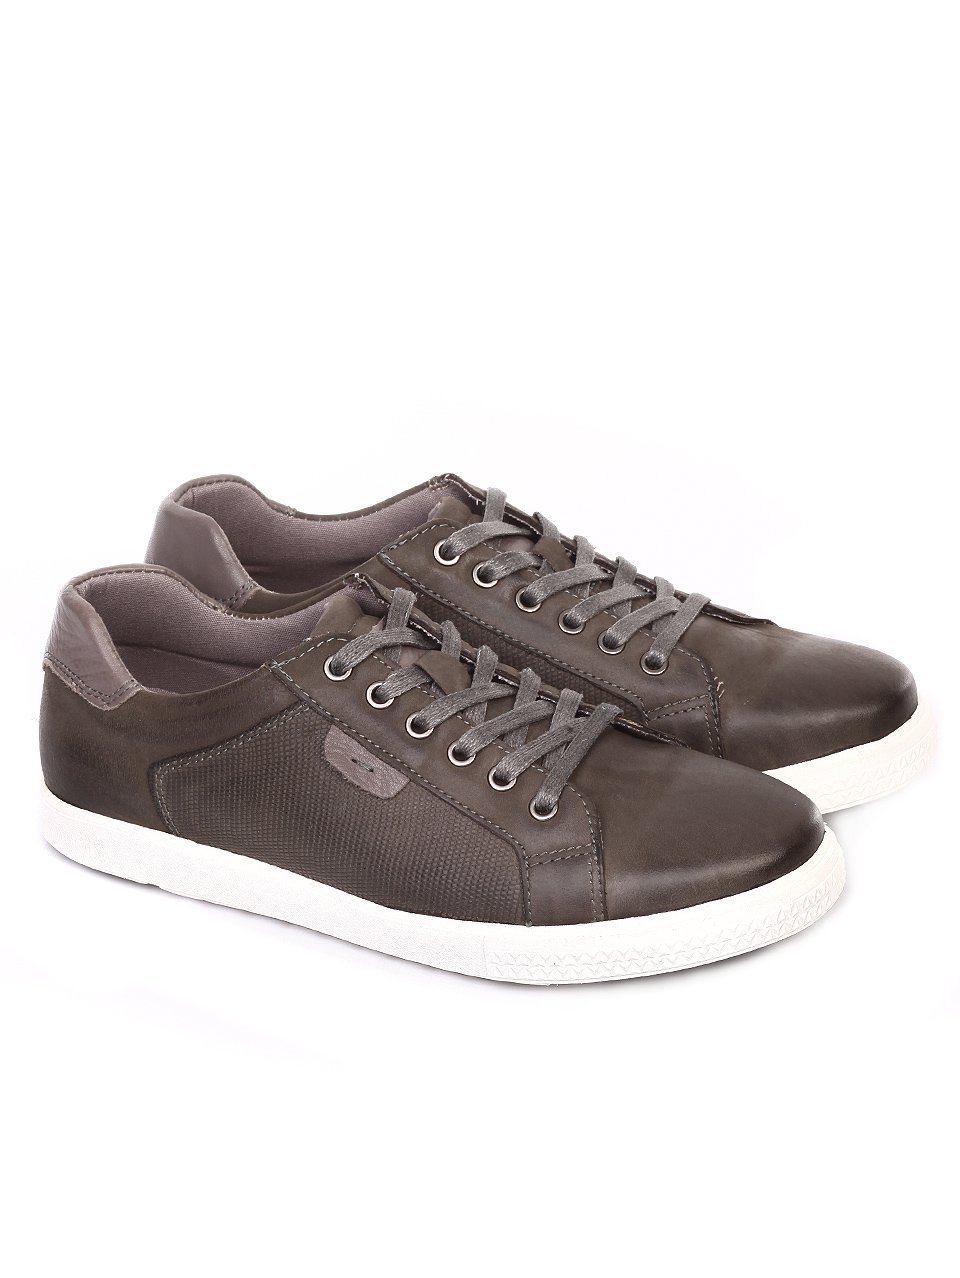 Ежедневни мъжки обувки от естествен набук в сиво 7N-18102 grey